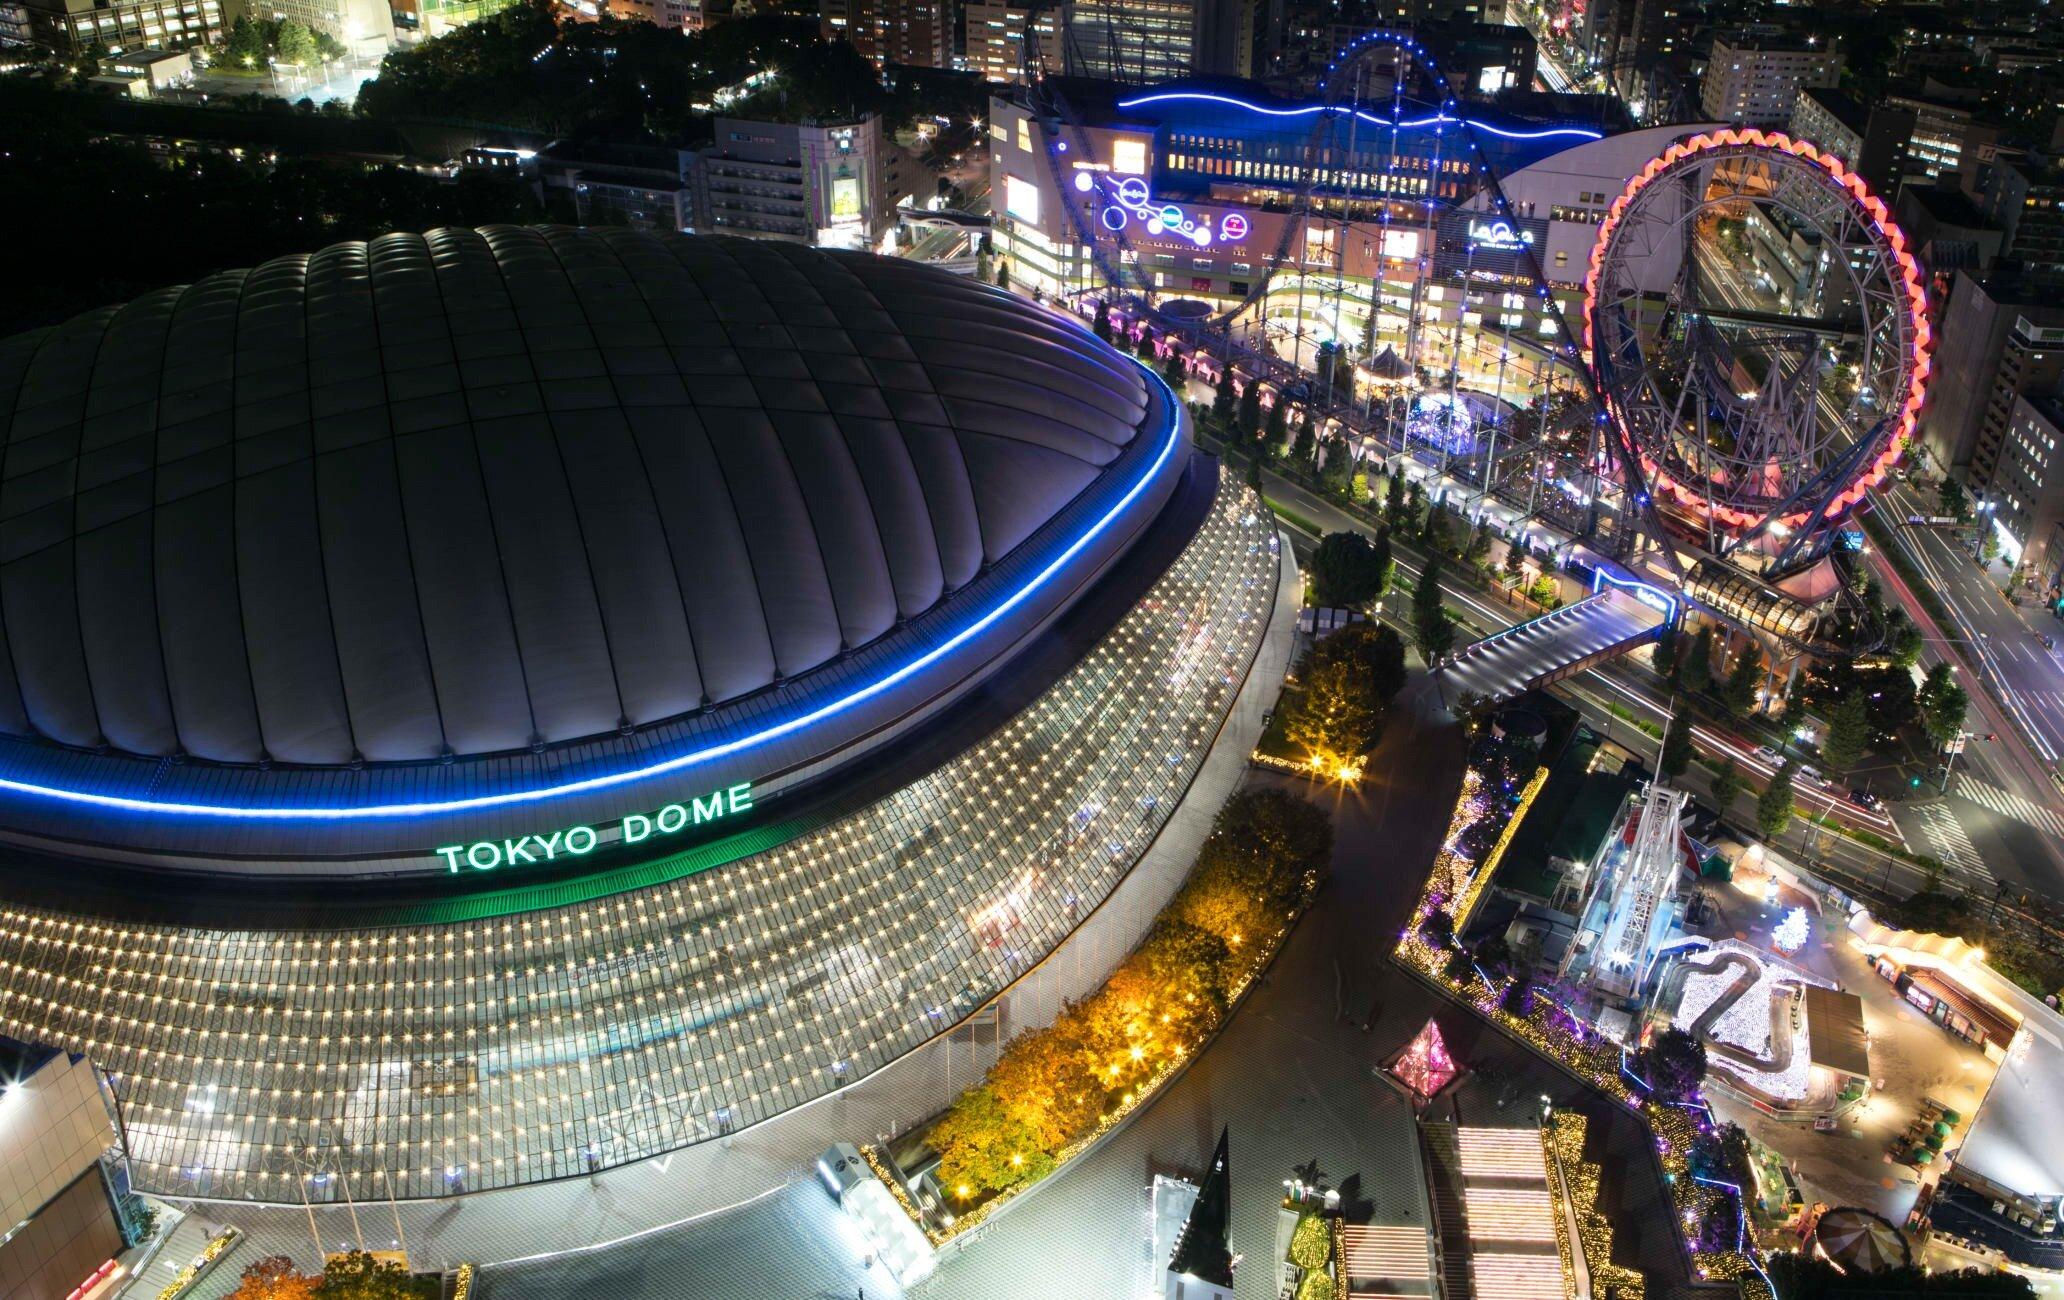 Sân vận động mái vòm Tokyo Dome tại Nhật Bản (Ảnh: Internet)